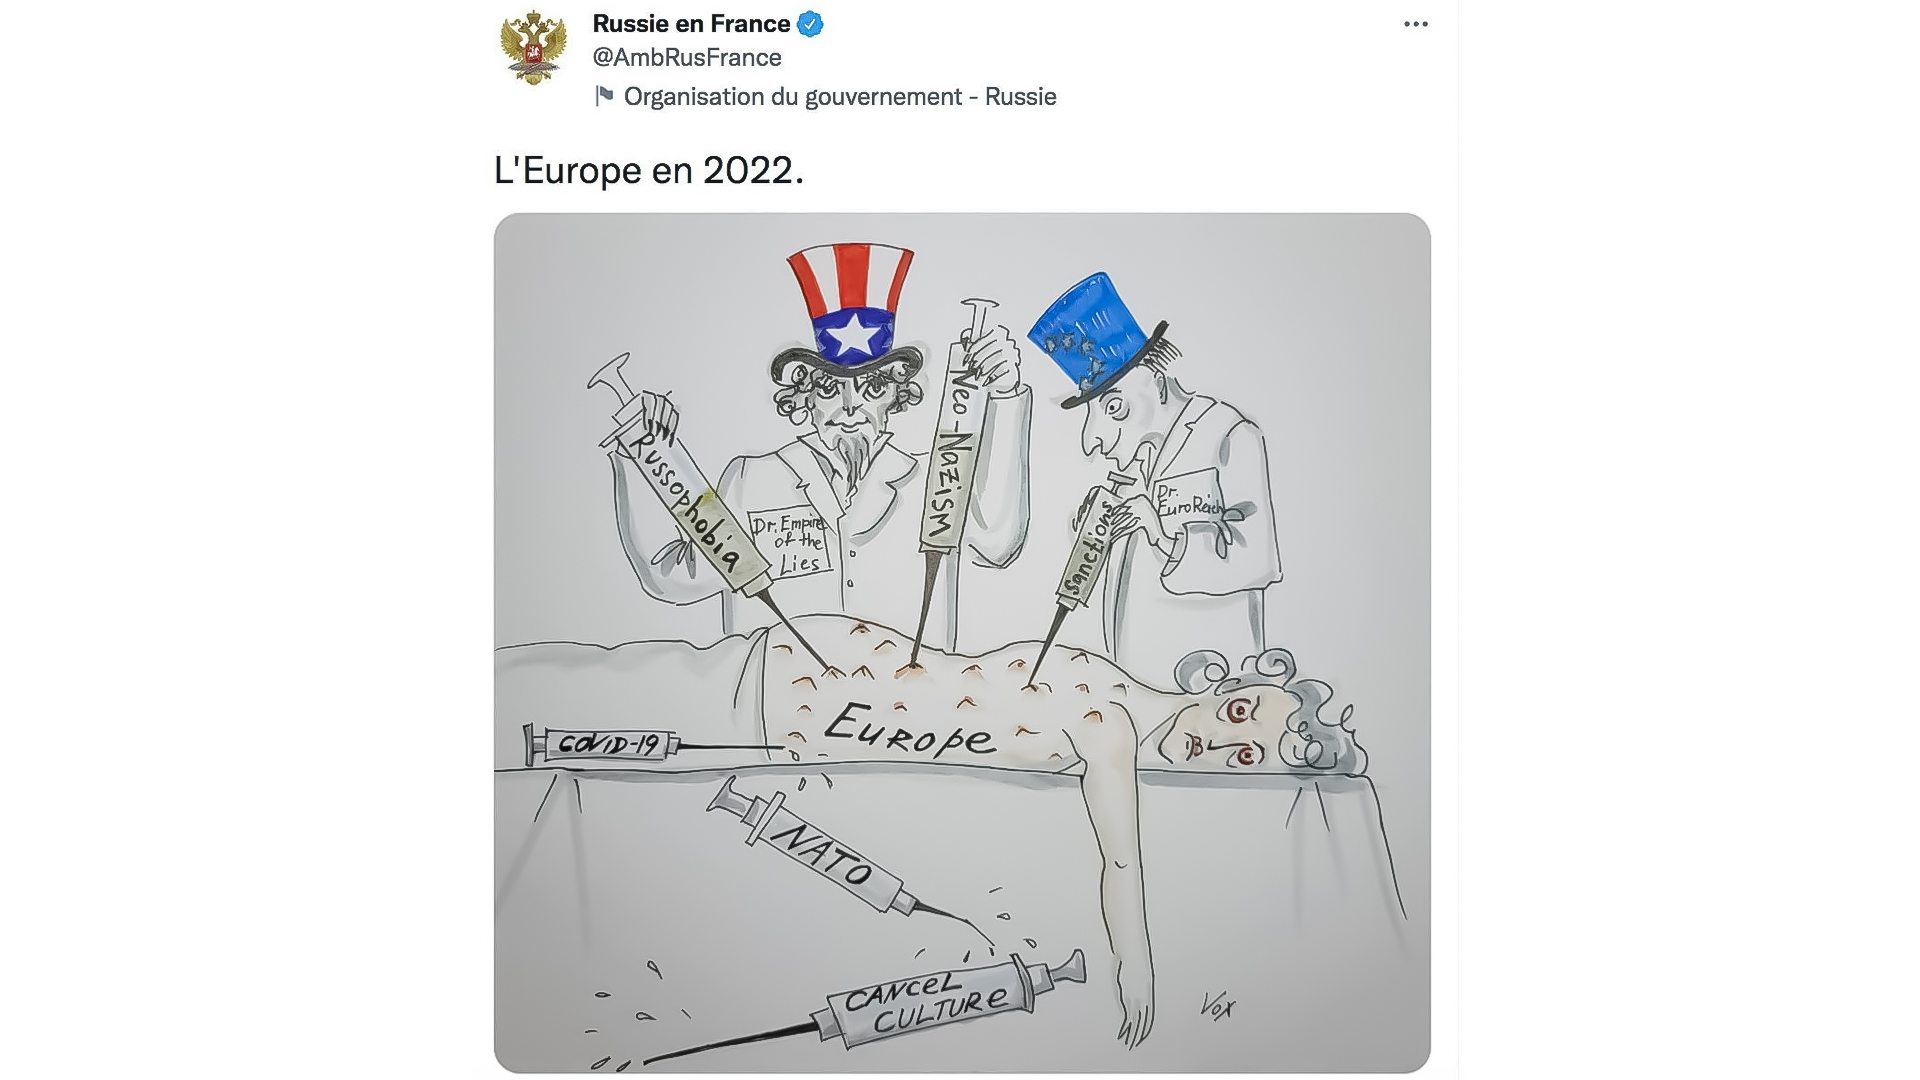 تقارير عالمية الرسوم المسيئة Caricature روسيا تذكر فرنسا بـشارلي إيبدو والرسوم المسيئة للمسلمين